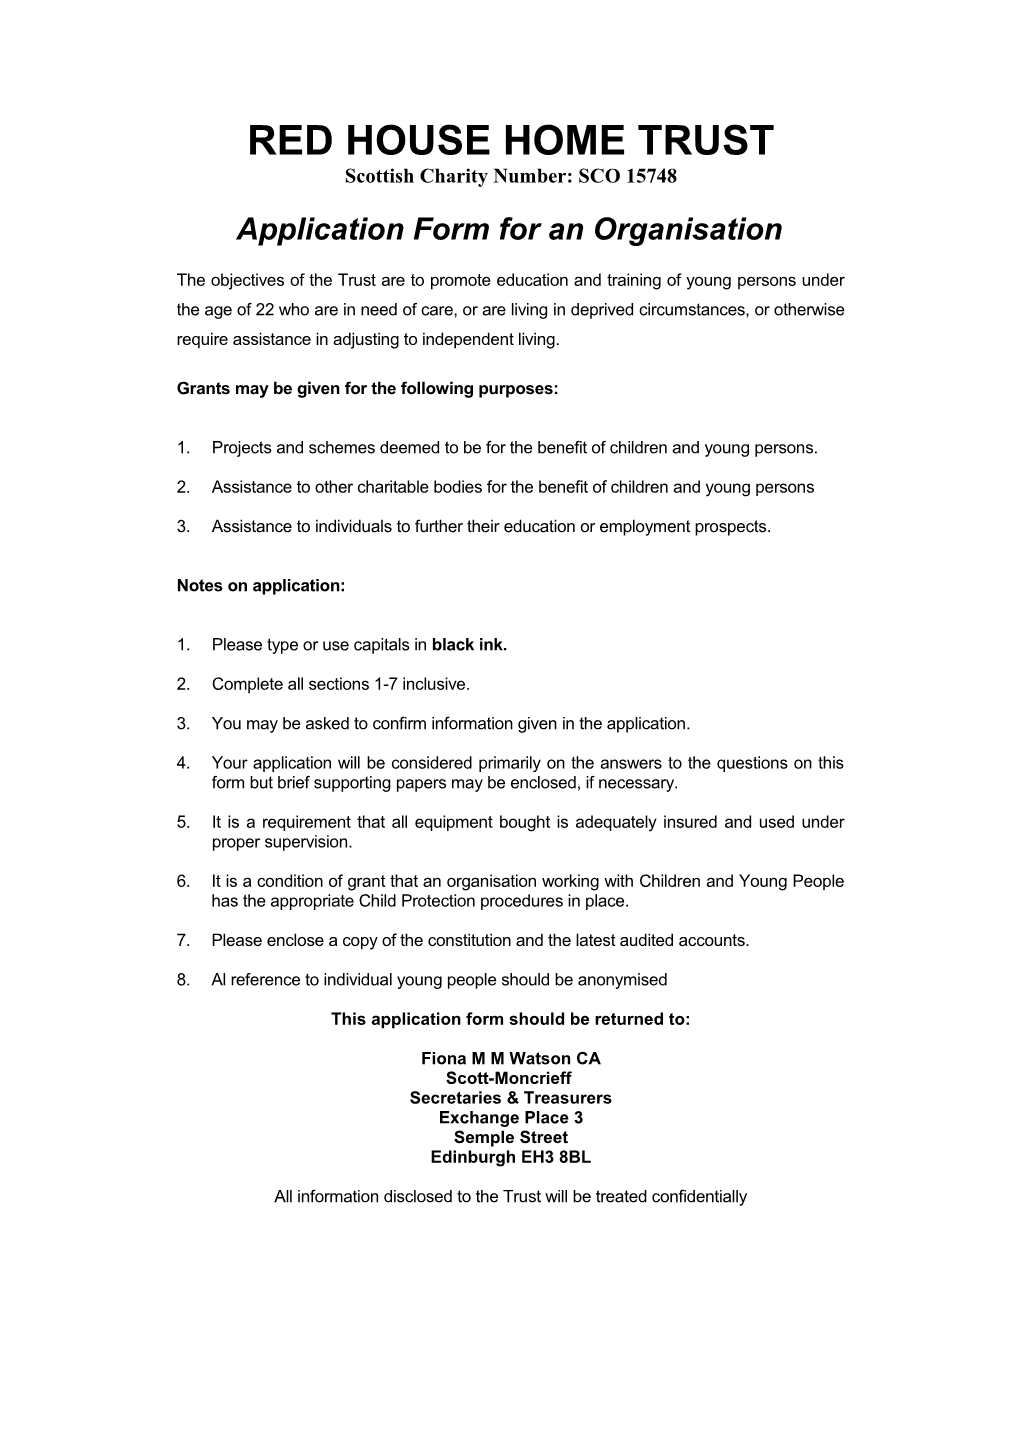 App Form Organisation Amended June 2016